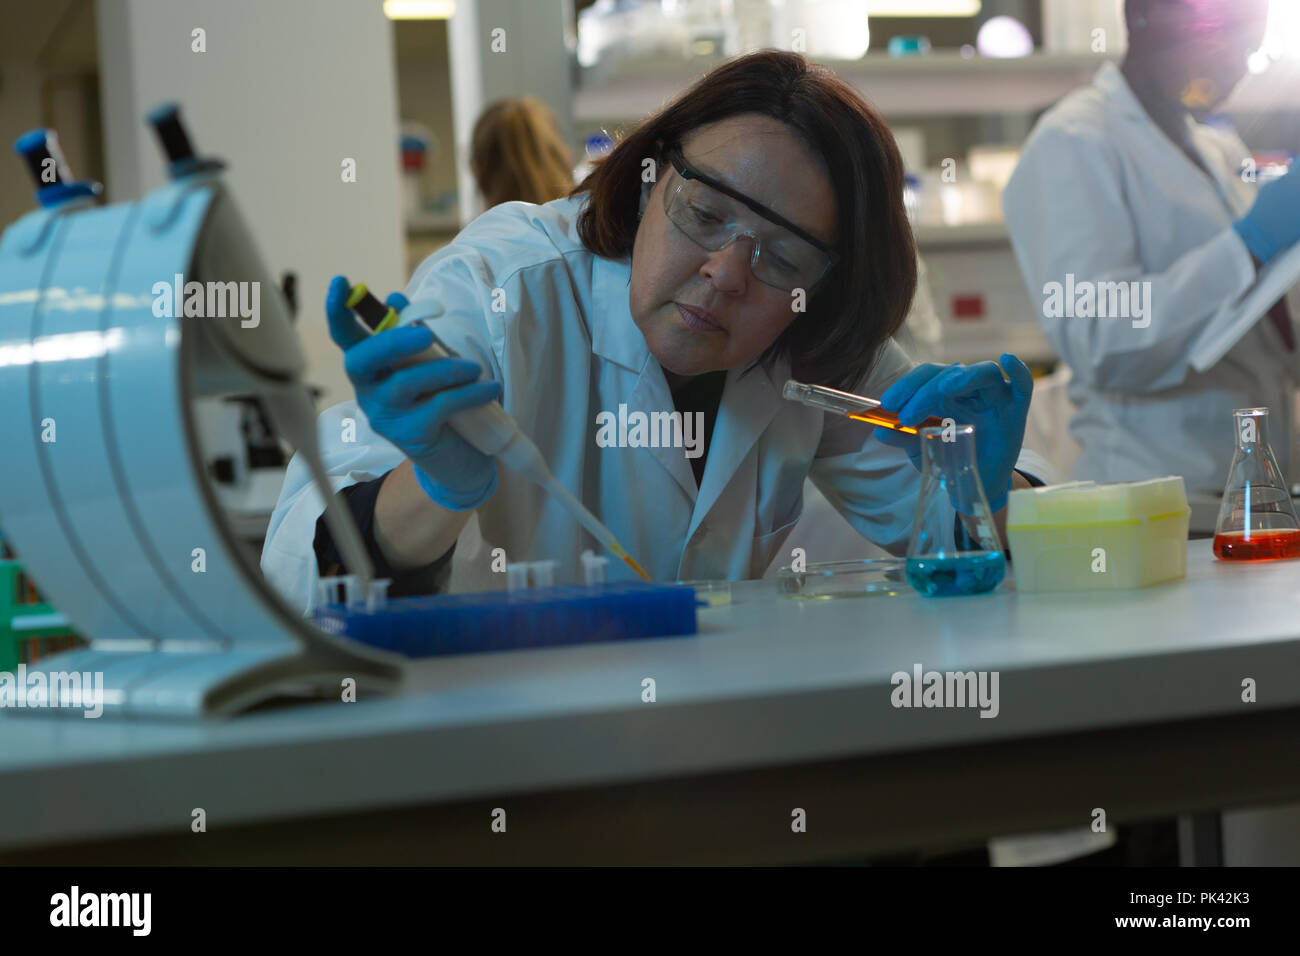 Female scientist using pipette in laboratory Stock Photo